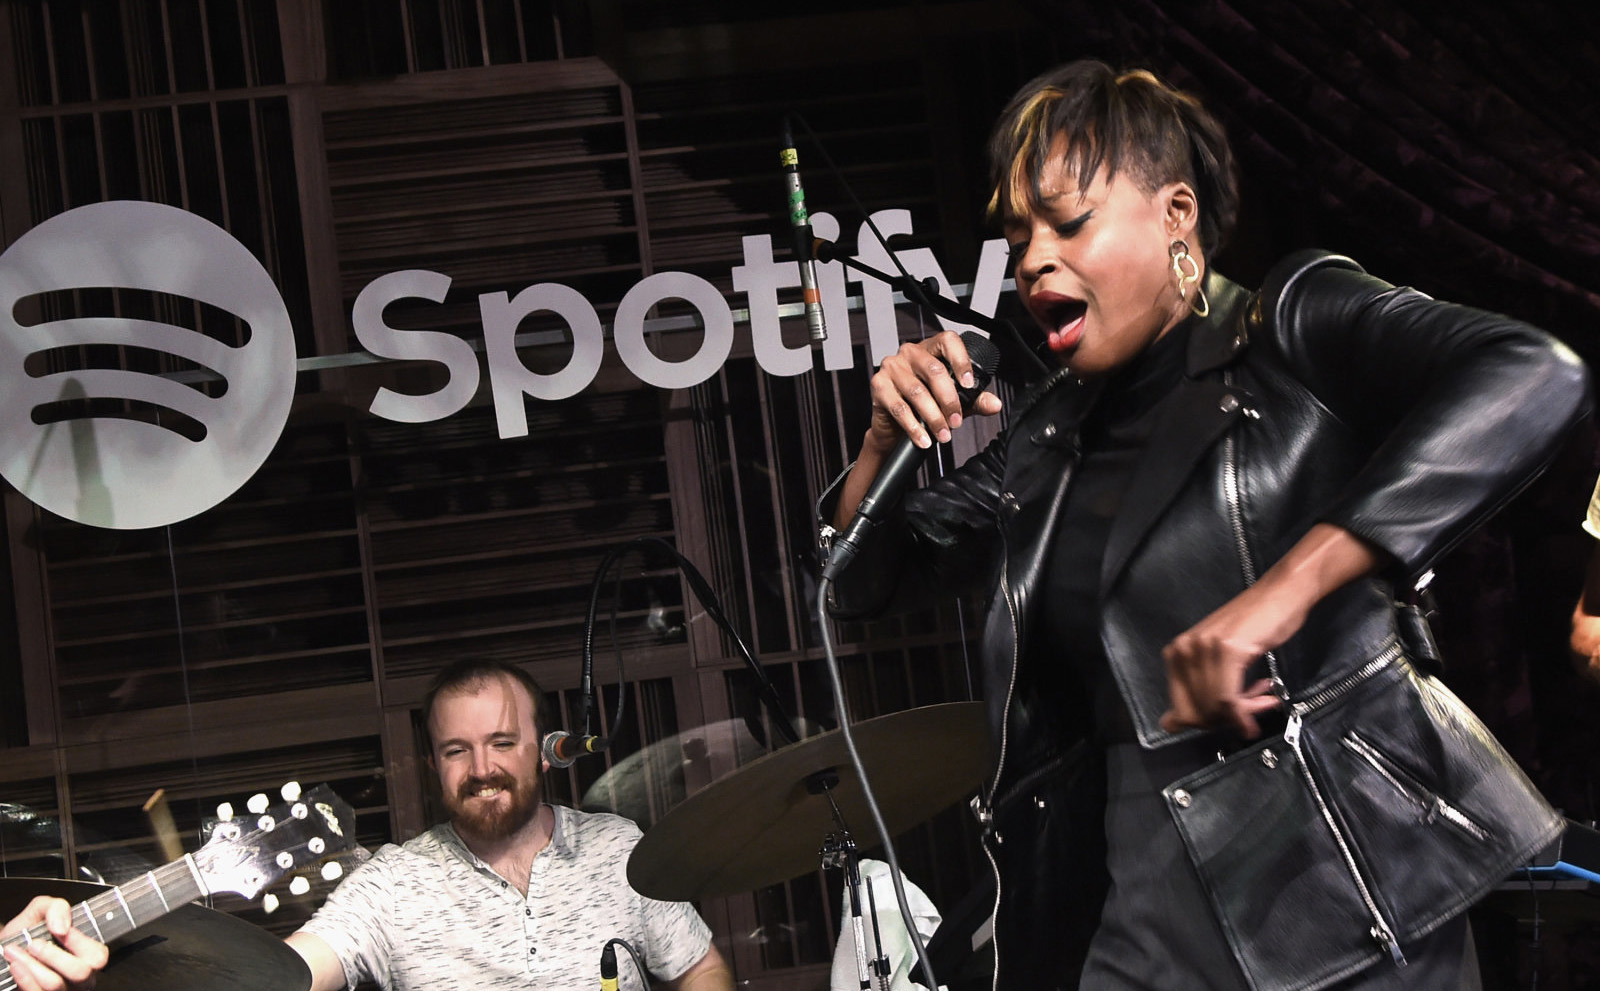 Liệu có phải Spotify và Amazon đang cố kiện các nhạc sỹ?